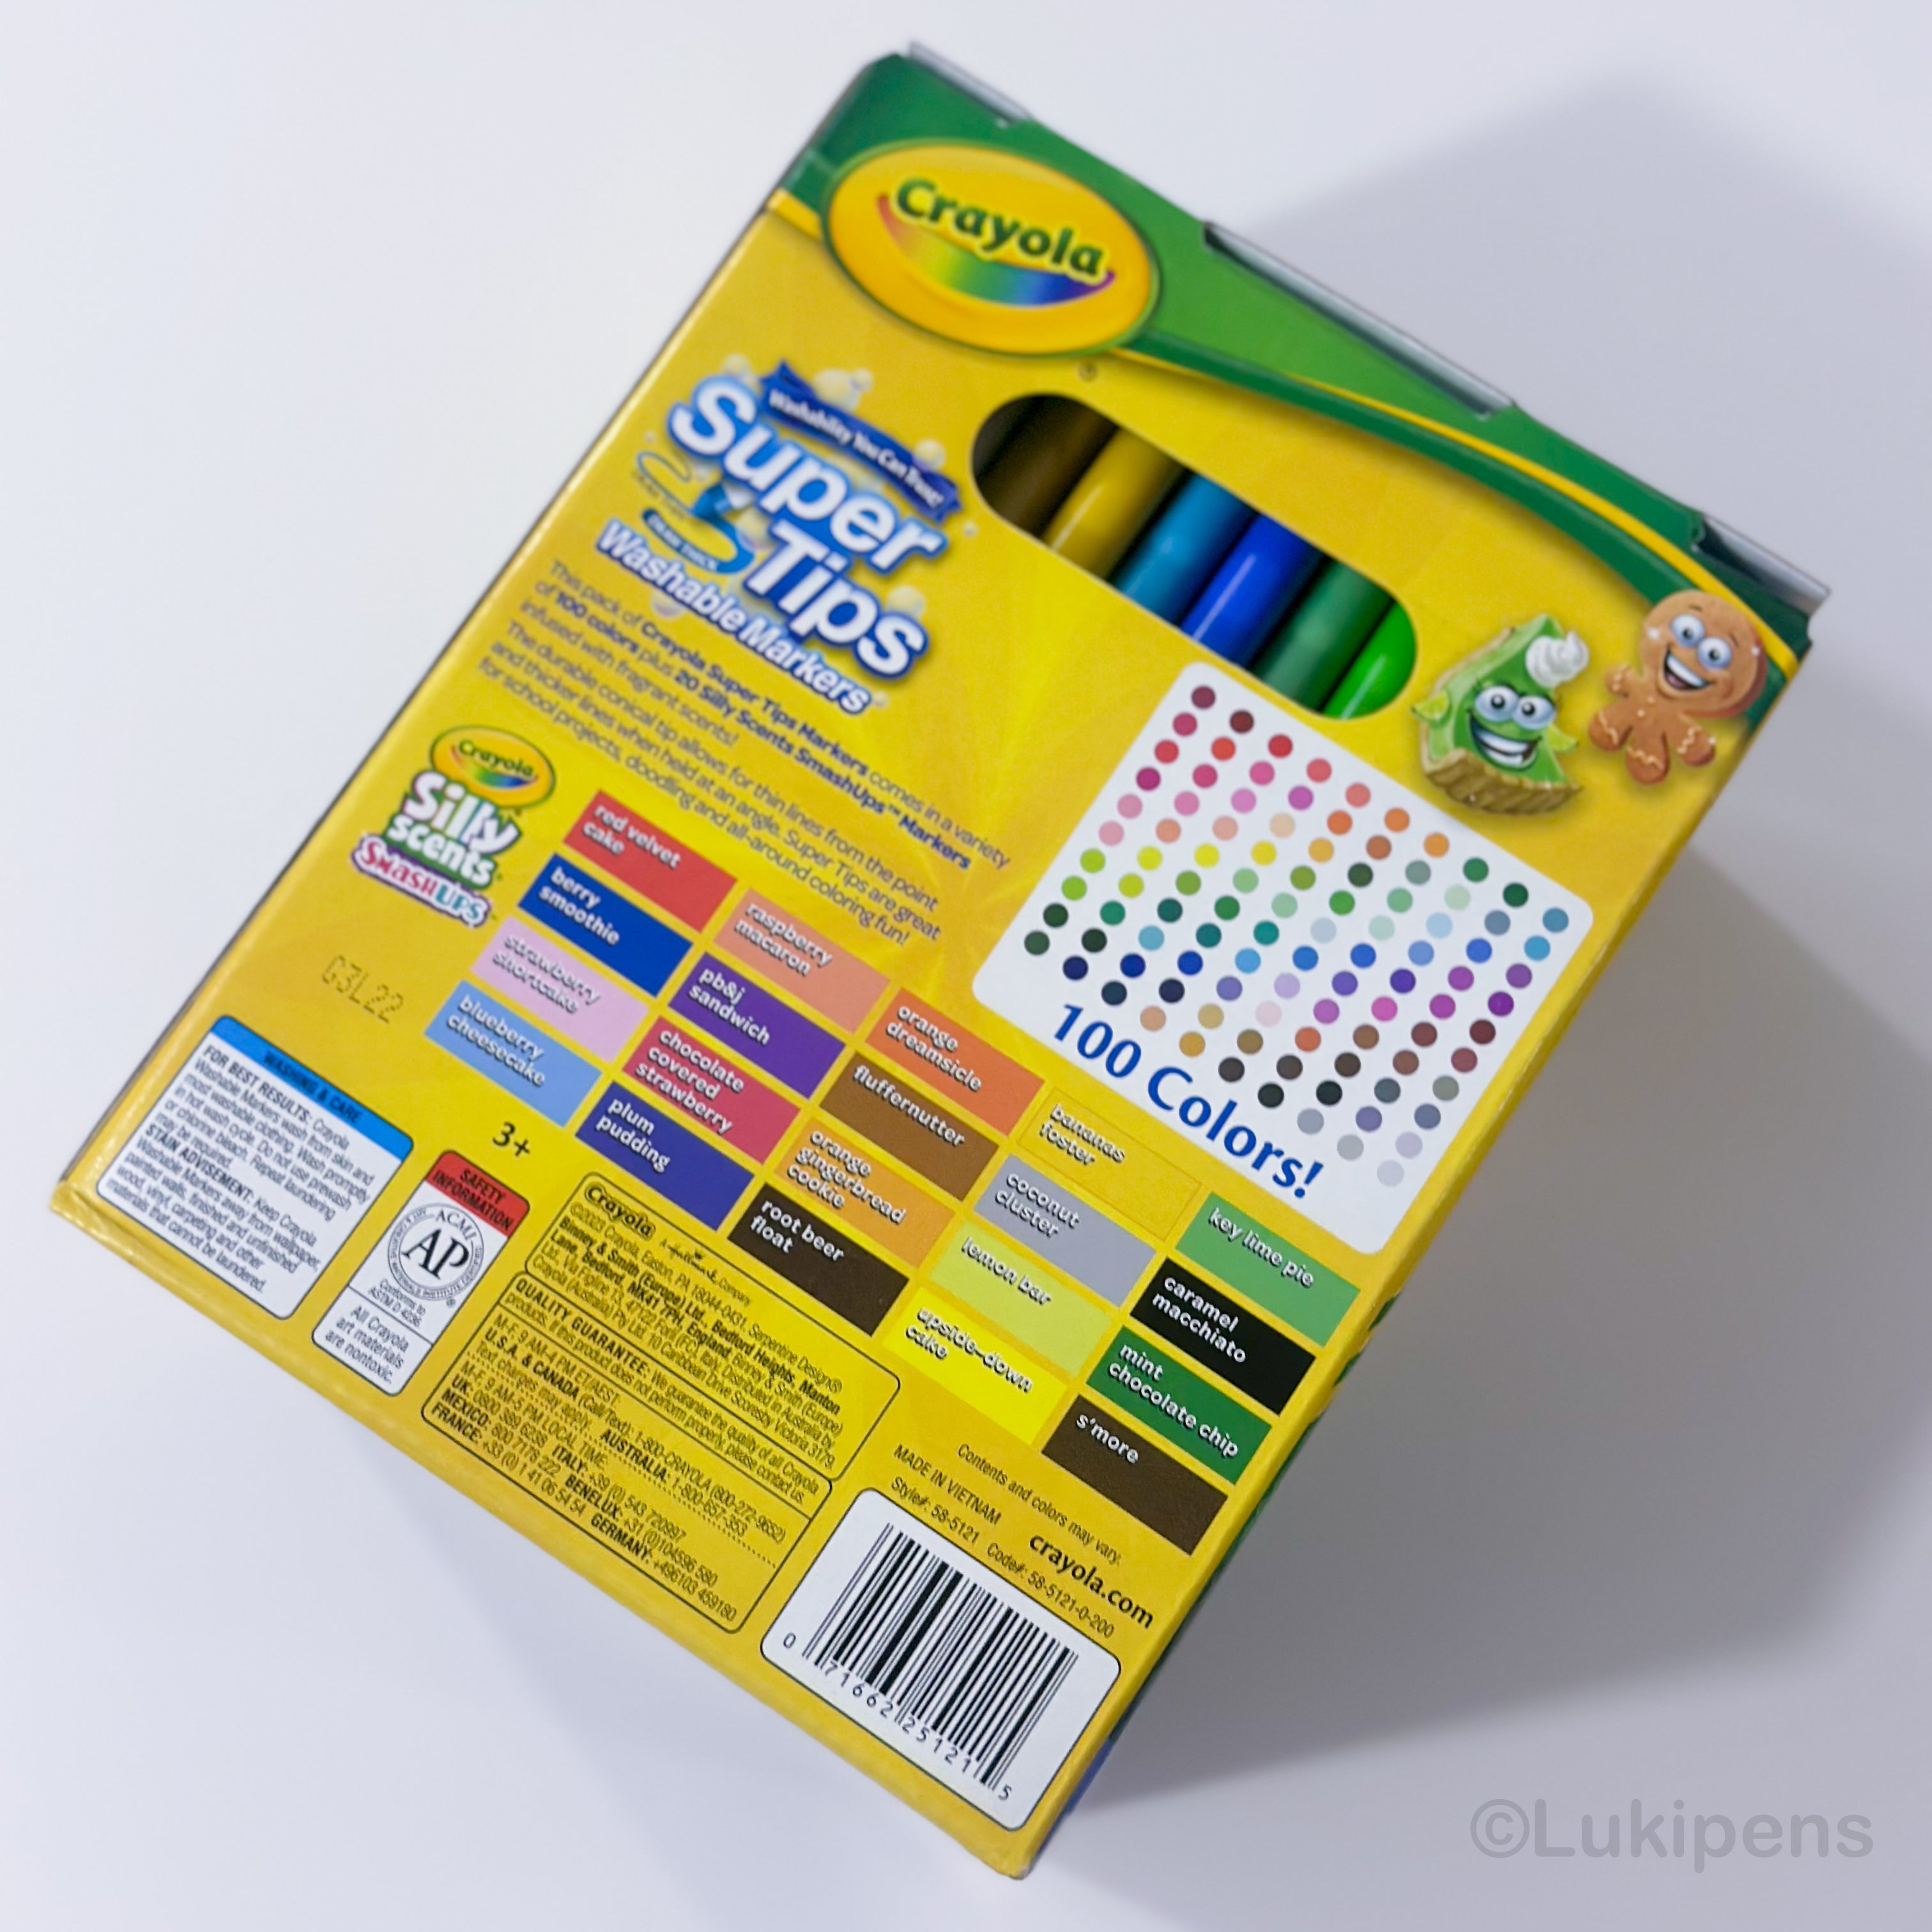 Marcadores lavables Crayola Super tips de 100 unidades + 20 silly scents